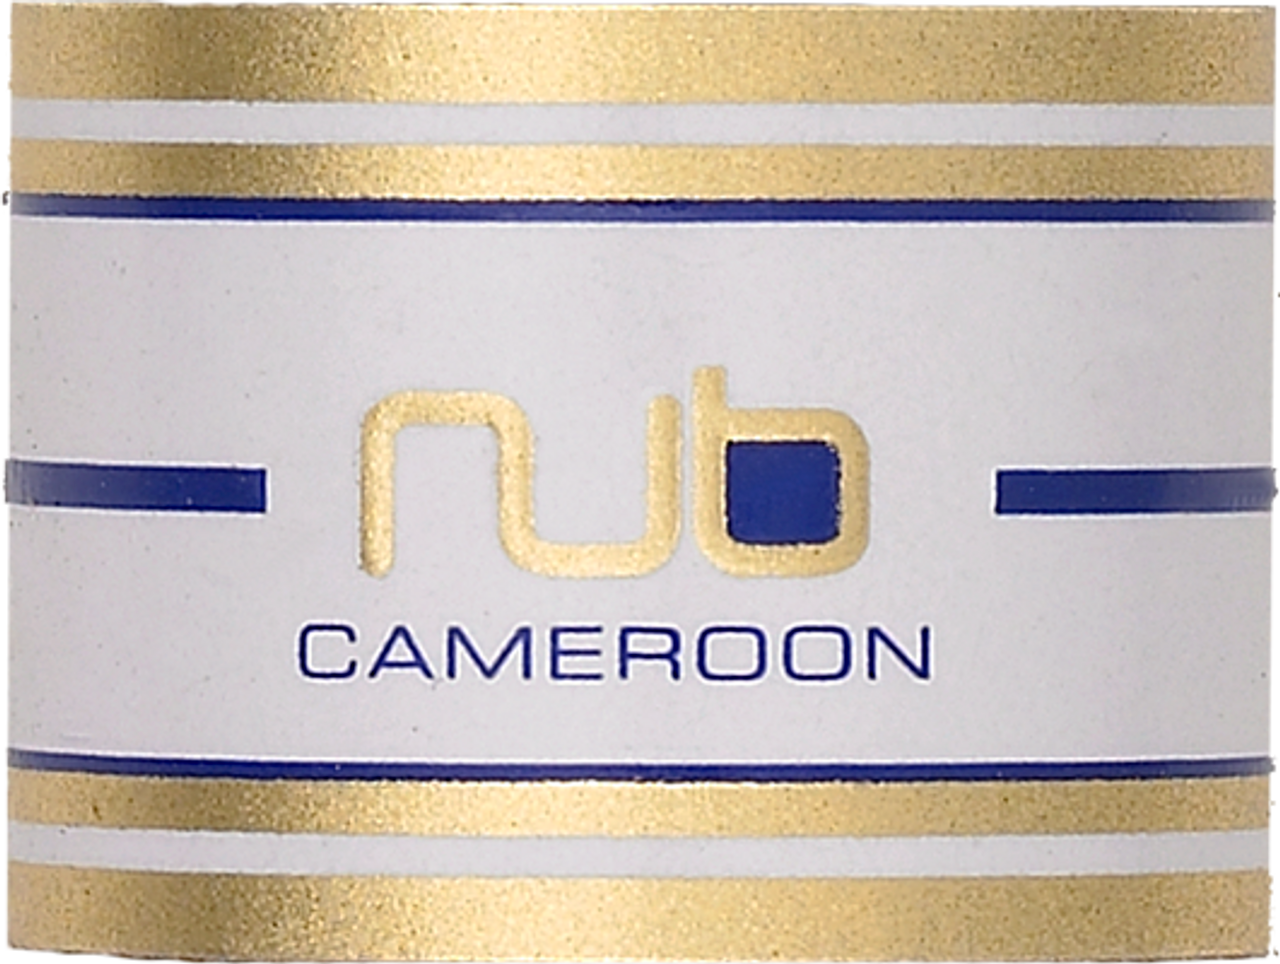 NUB Cameroon 460